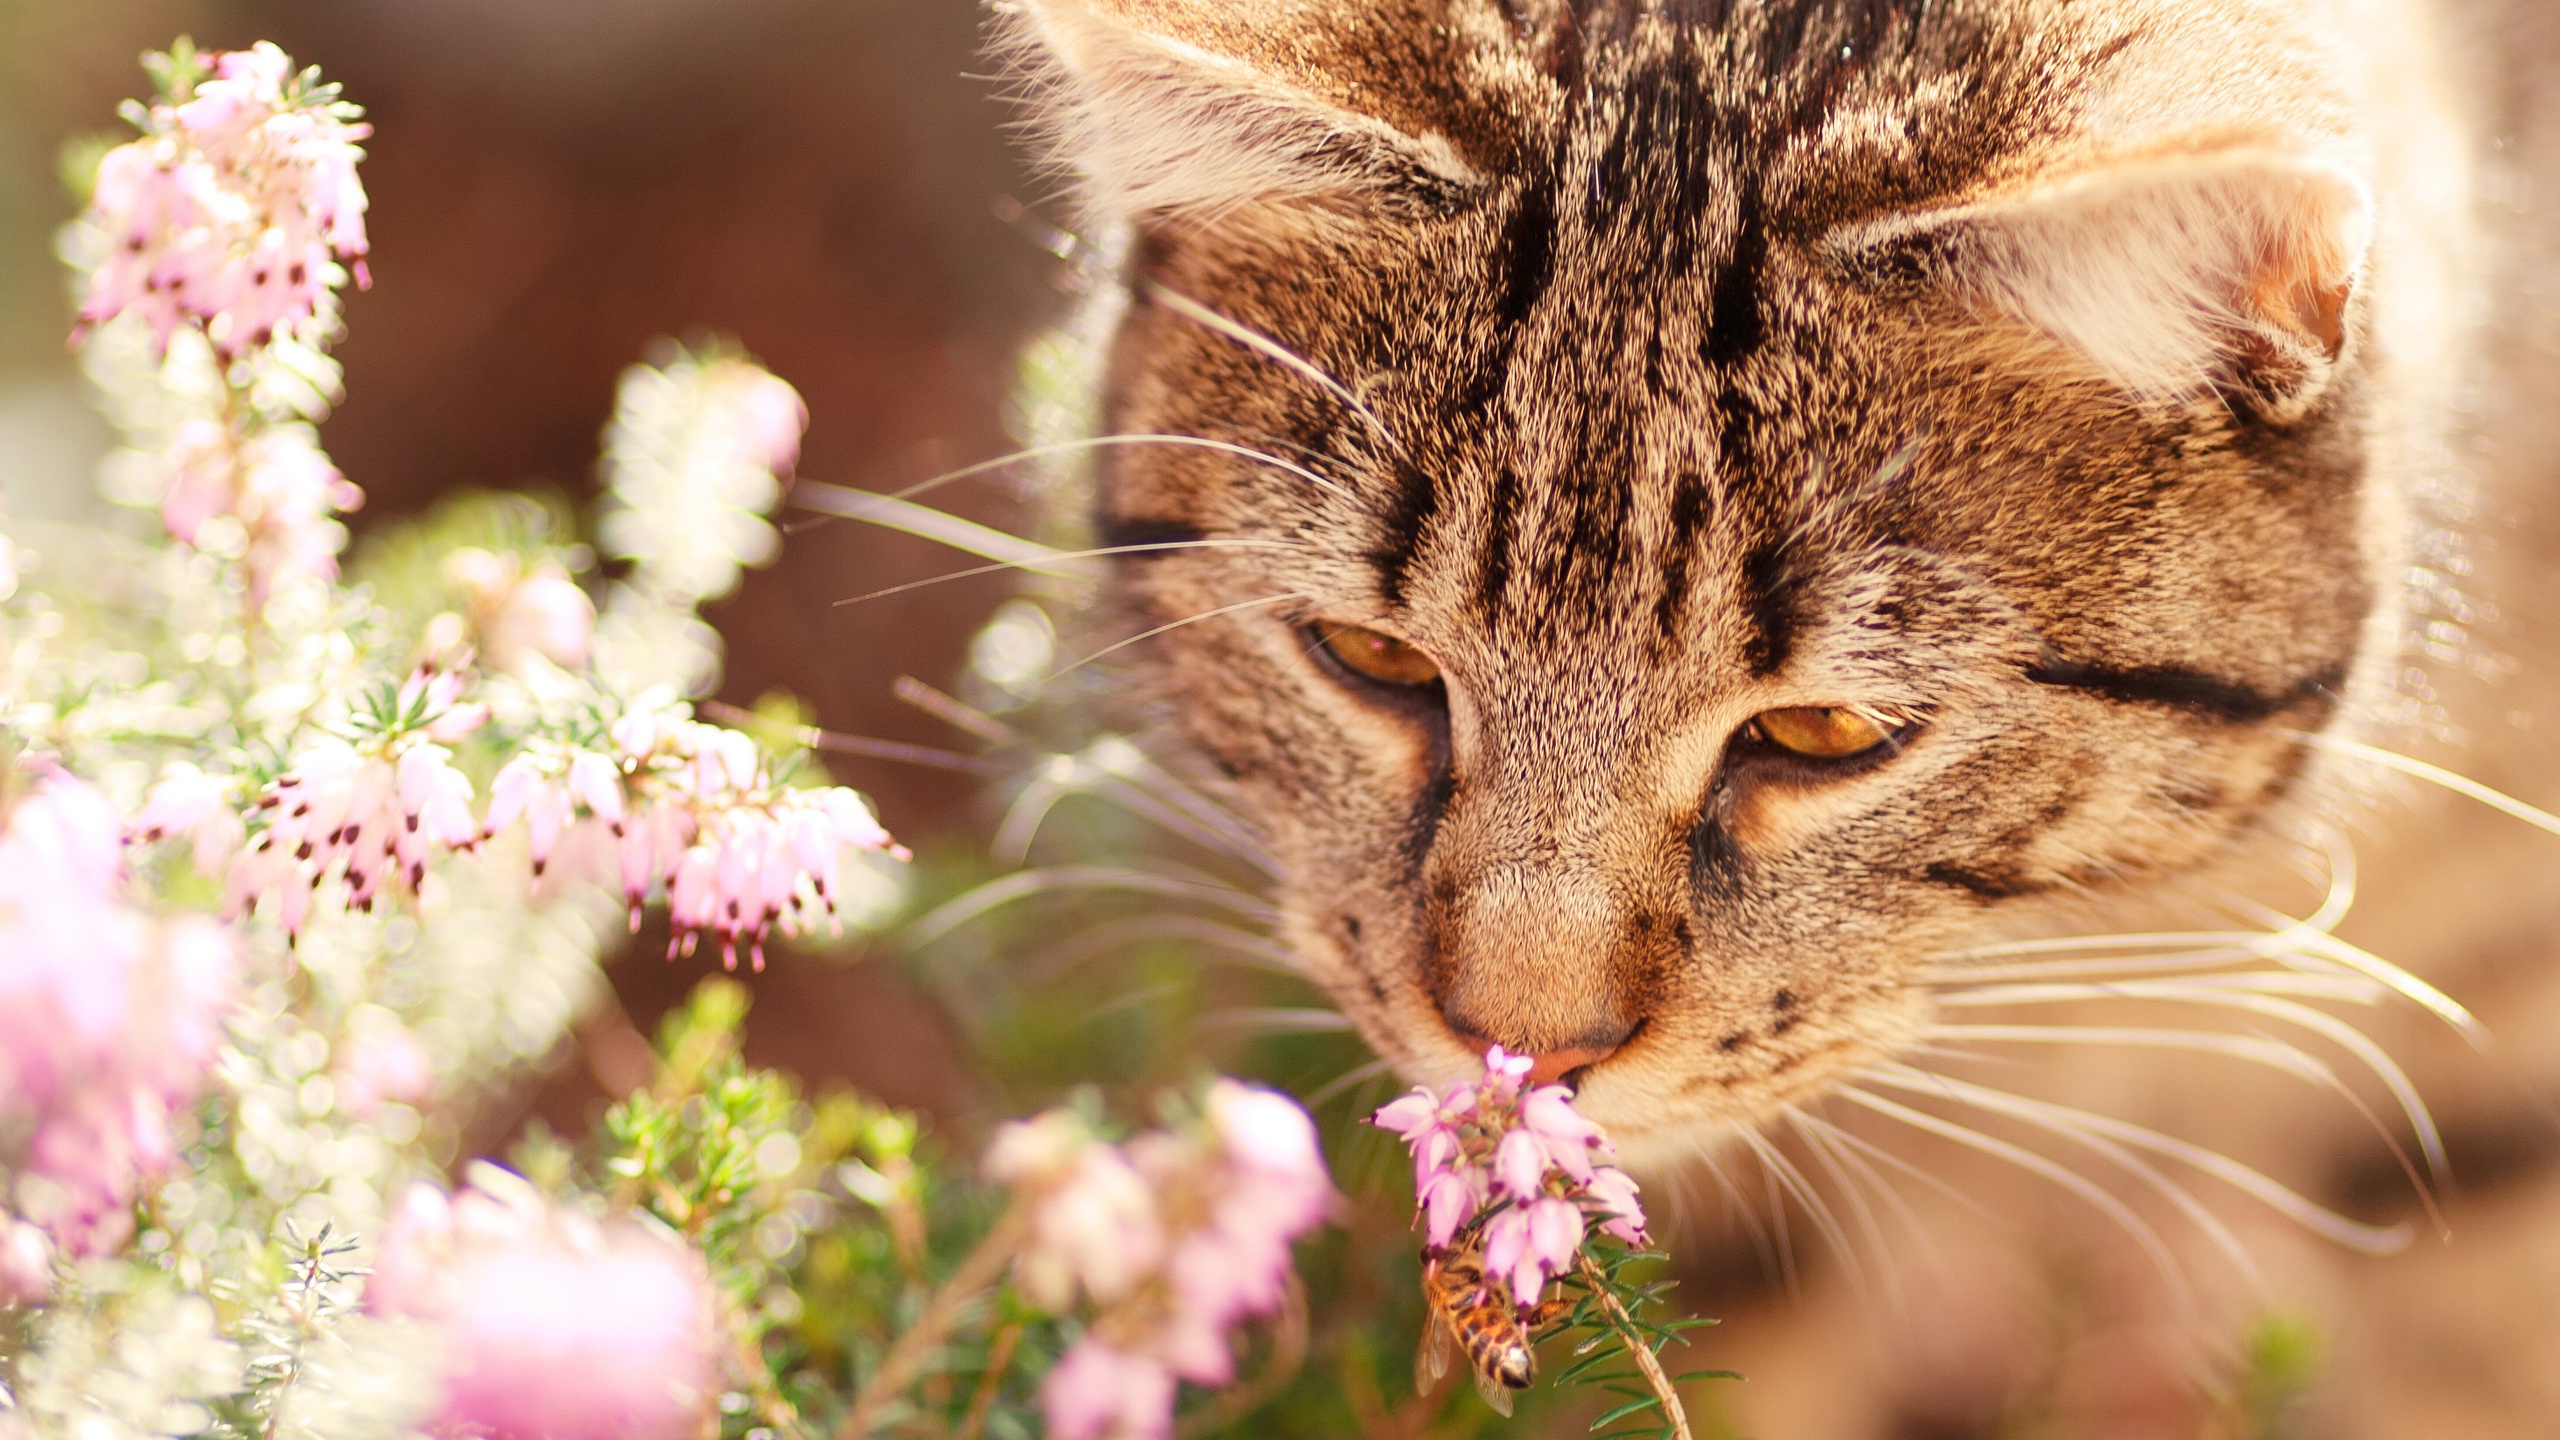 Descarga gratuita de fondo de pantalla para móvil de Animales, Gatos, Flor, Gato.